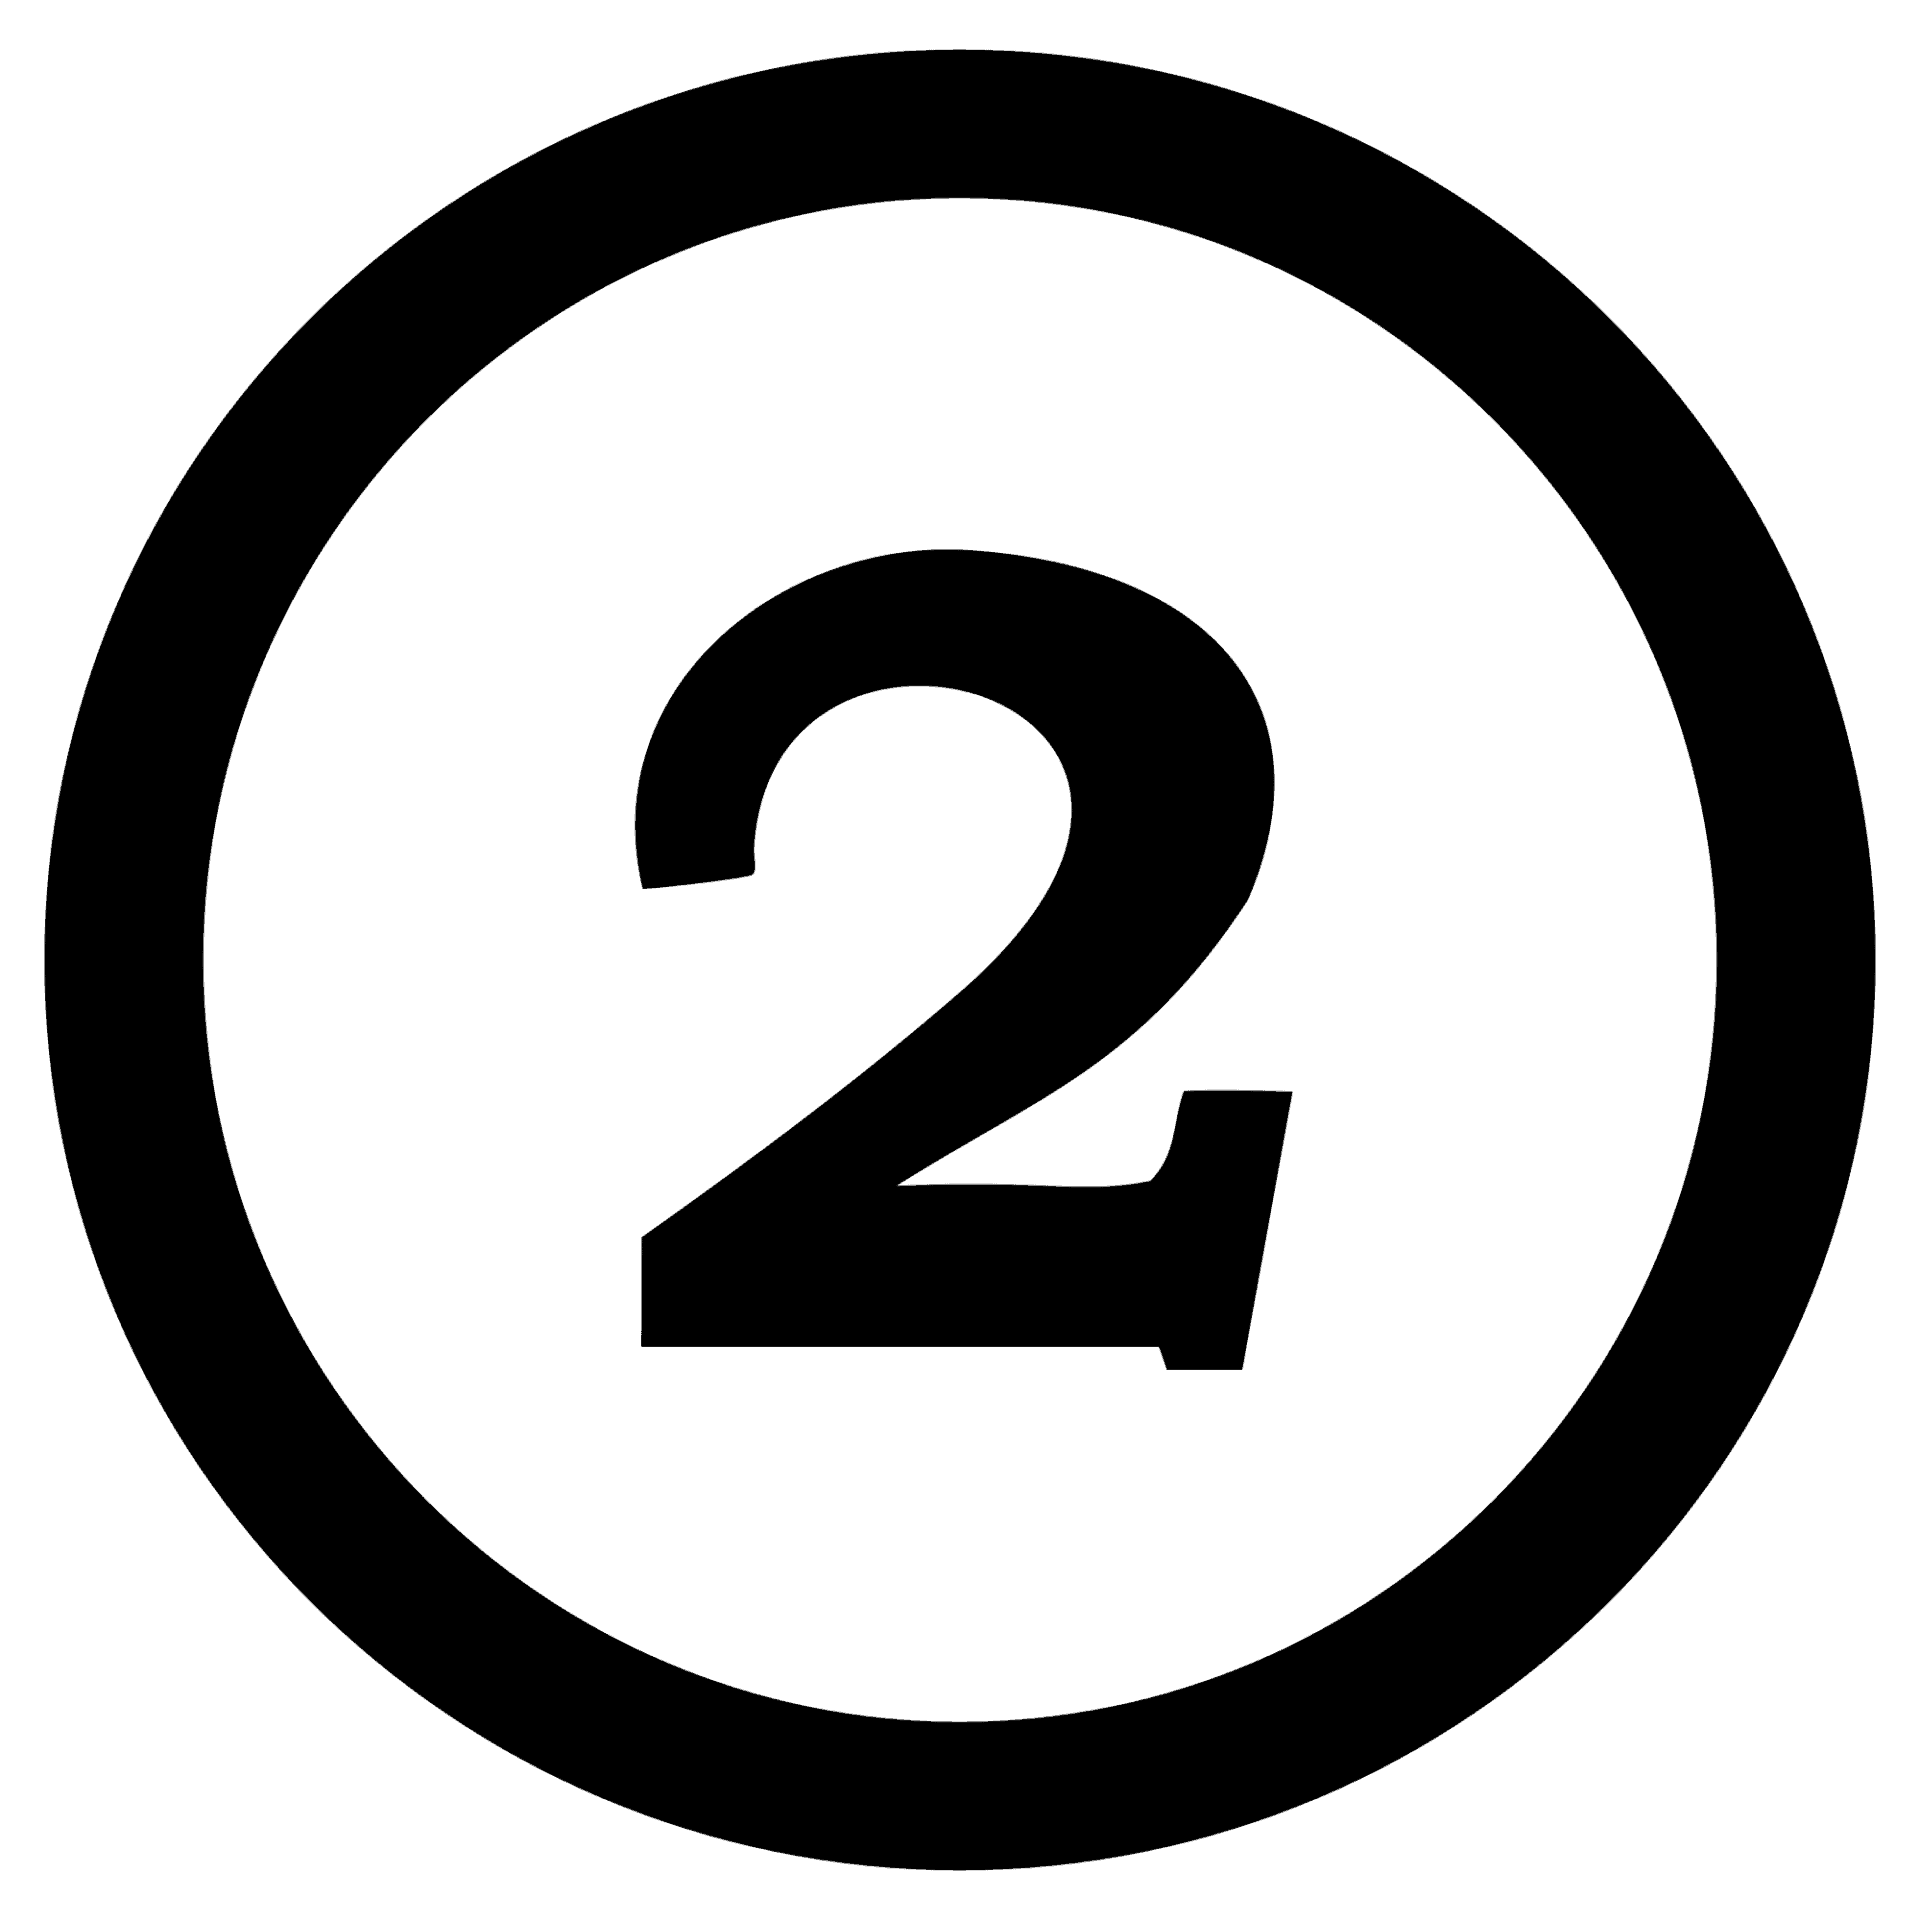 algarismo dois em tom preto, dentro de um círculo de mesma cor